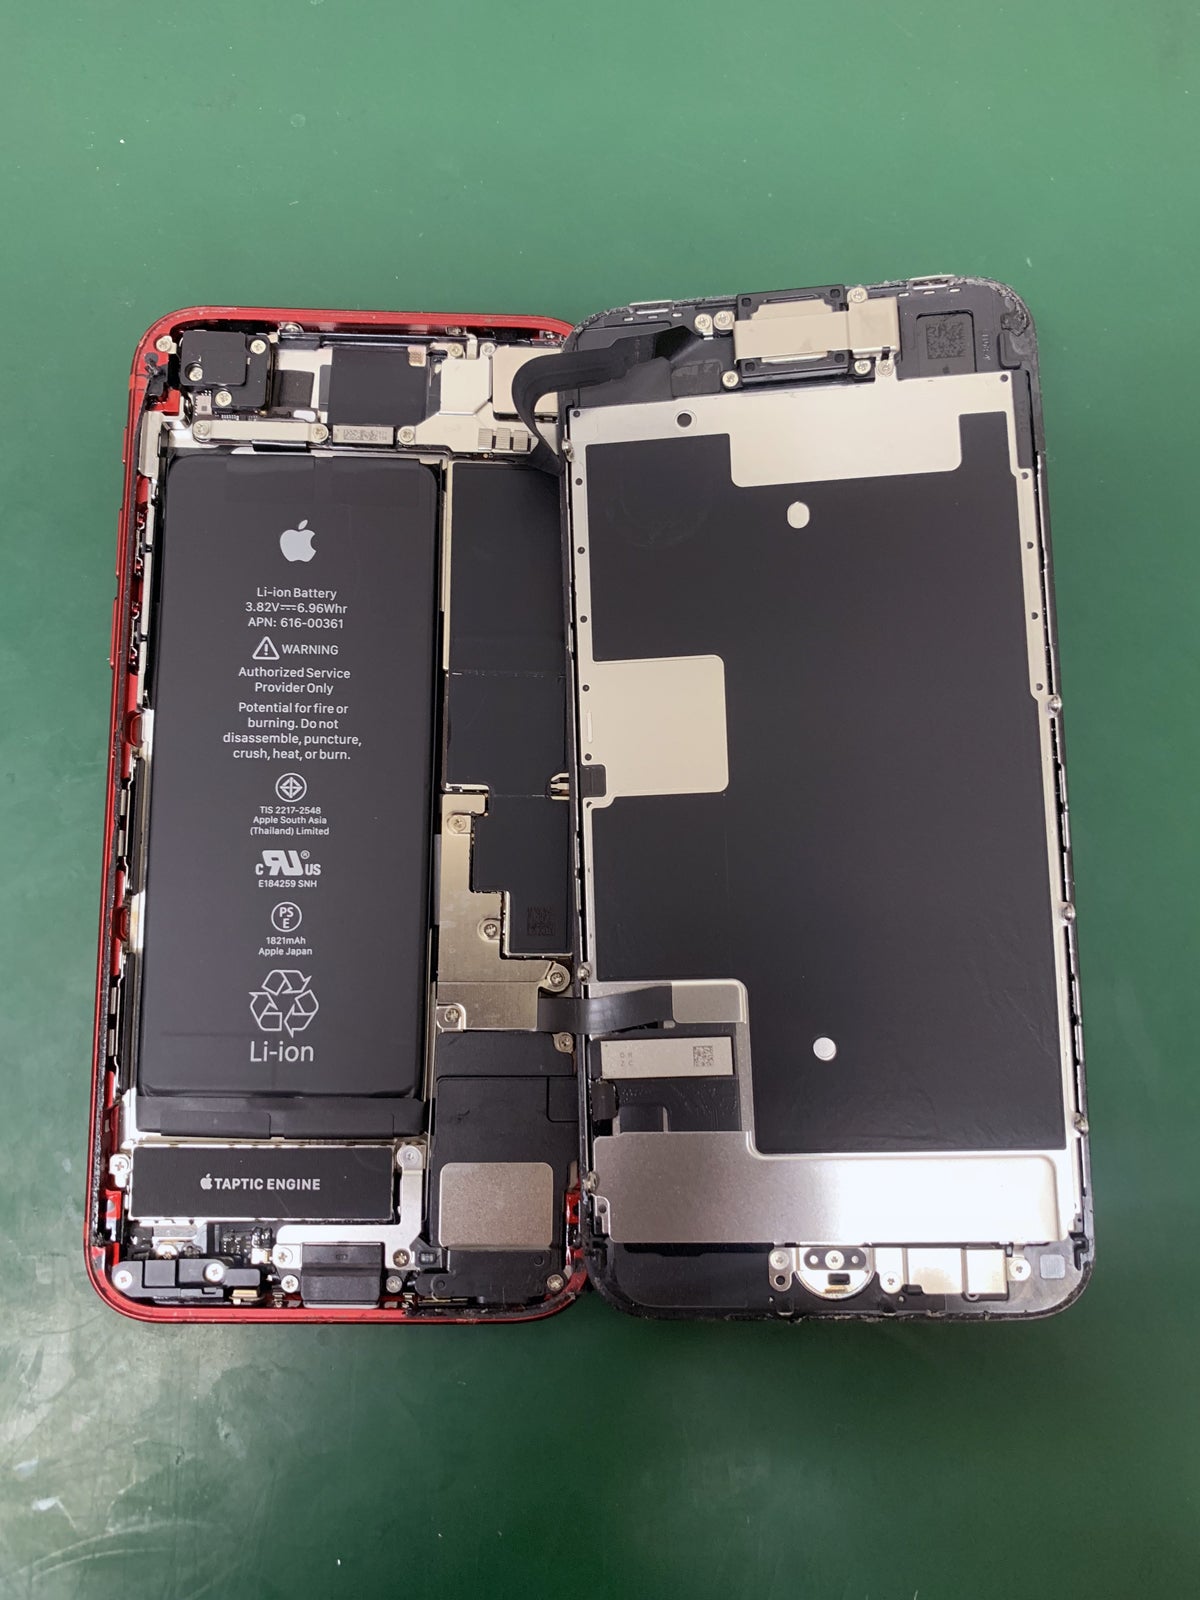 iPhone（アイフォン）修理工房 大宮店 ブログ